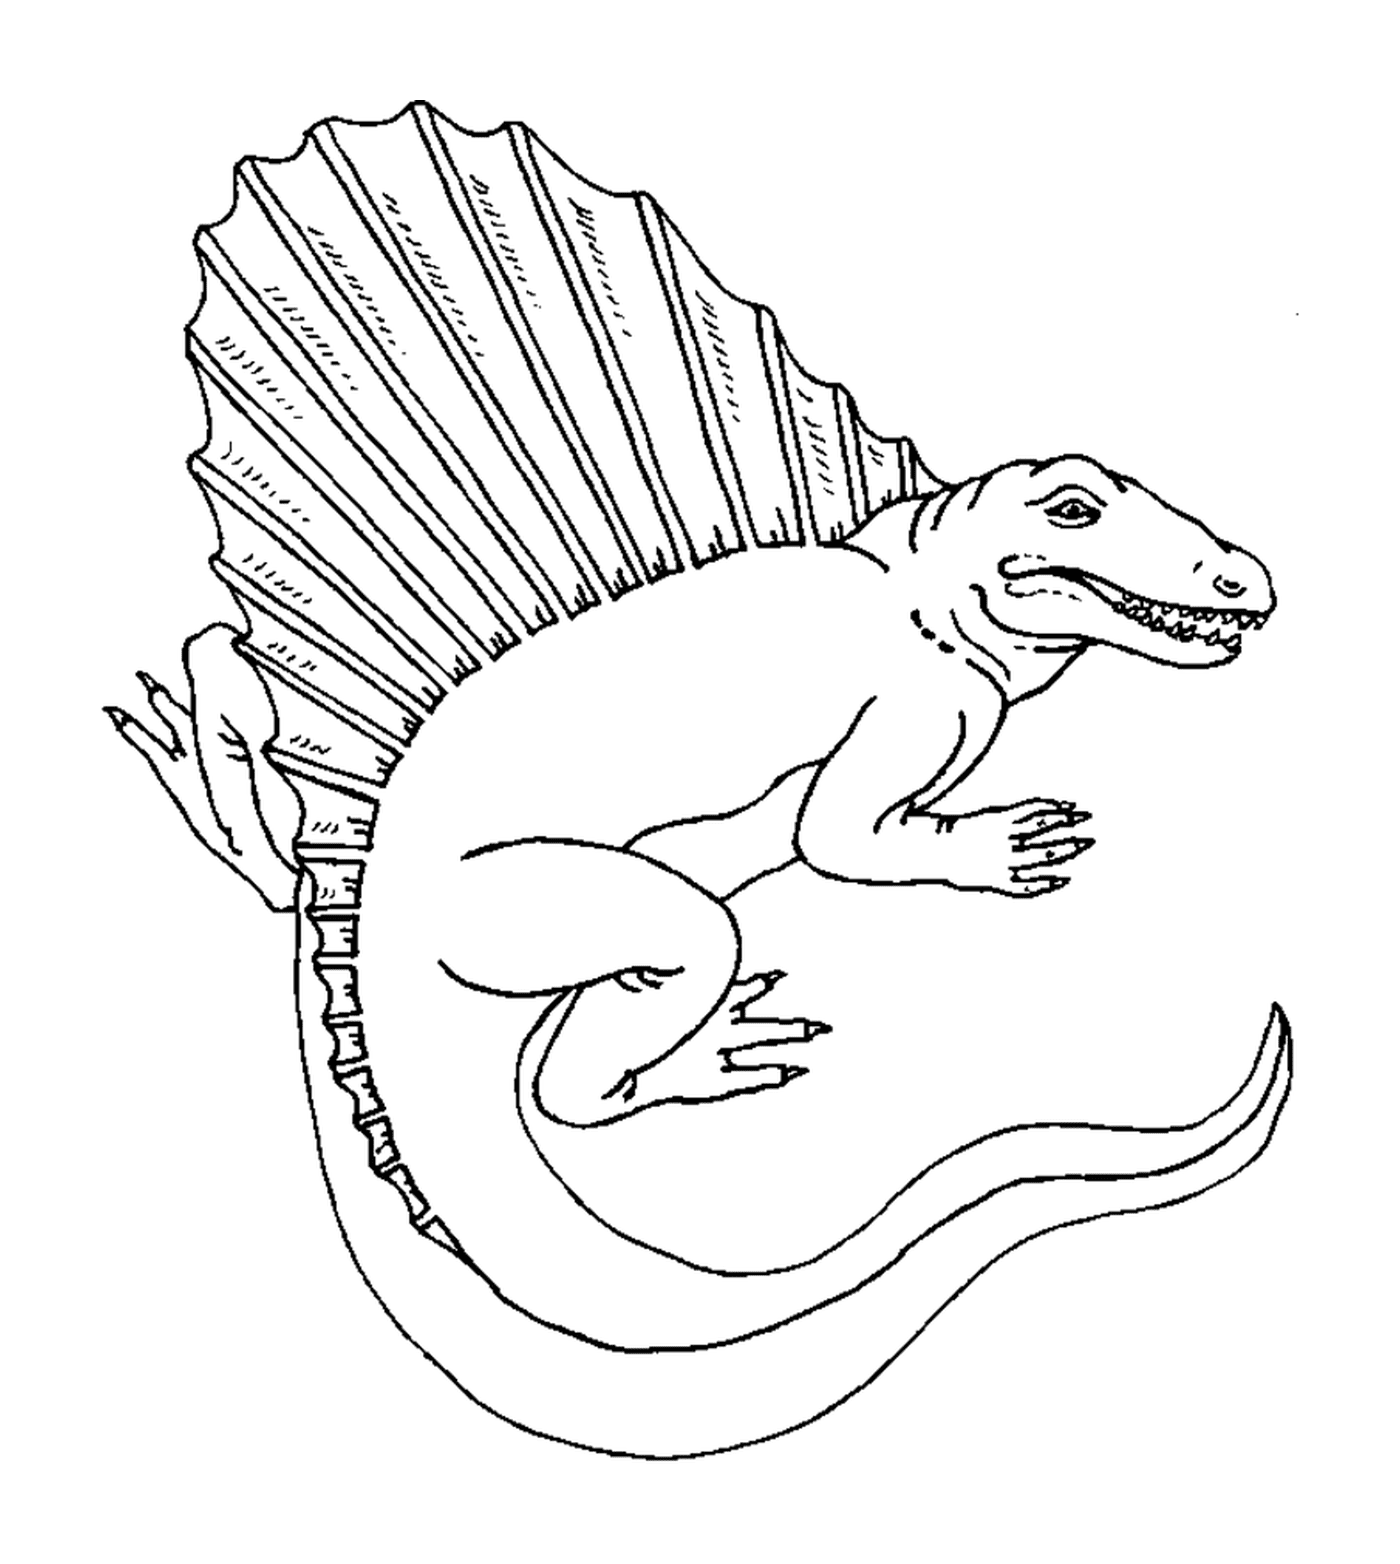  Desenho de um dinossauro preciso e realista 